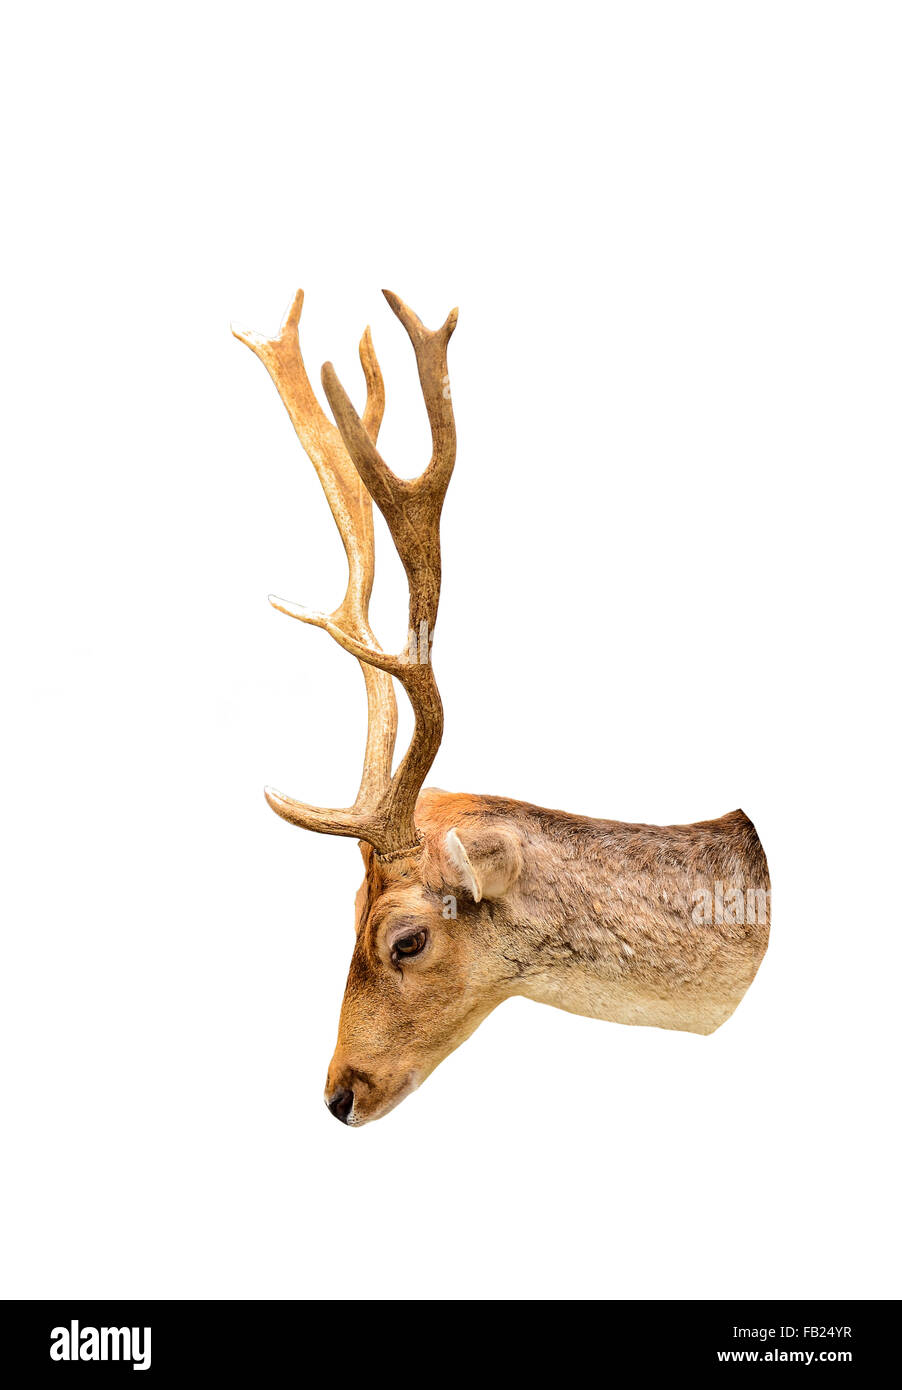 Non typical deer -Fotos und -Bildmaterial in hoher Auflösung – Alamy